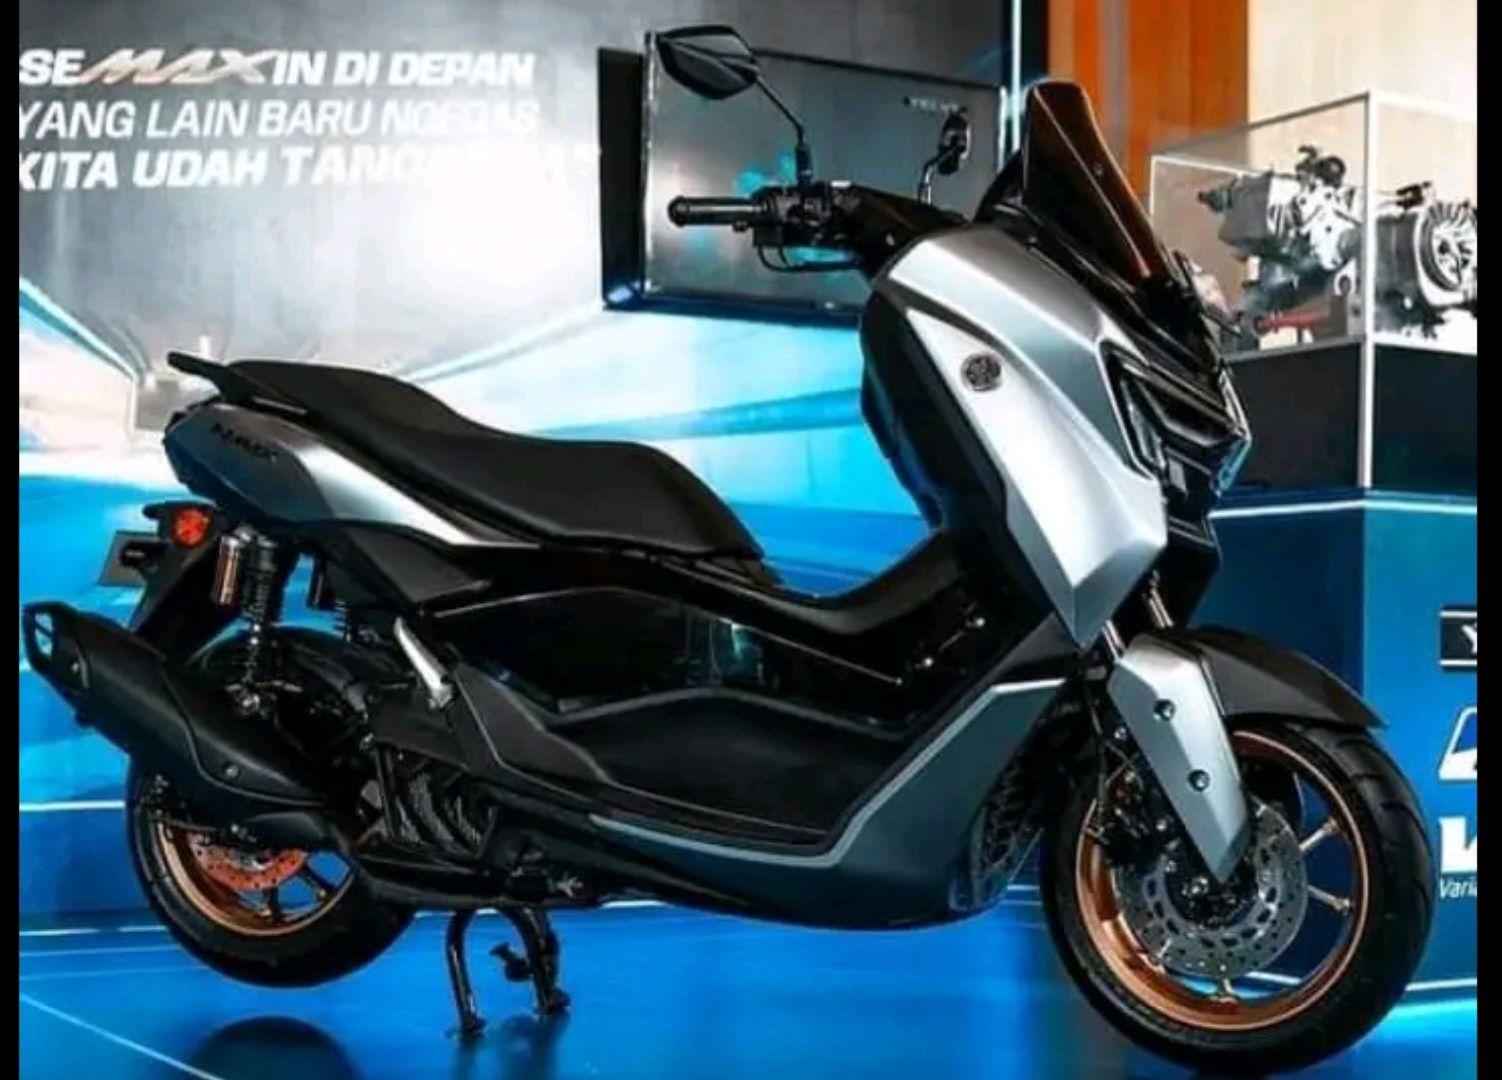 Yamaha Nmax Turbo: Skutik Premium dengan Segudang Fitur Canggih